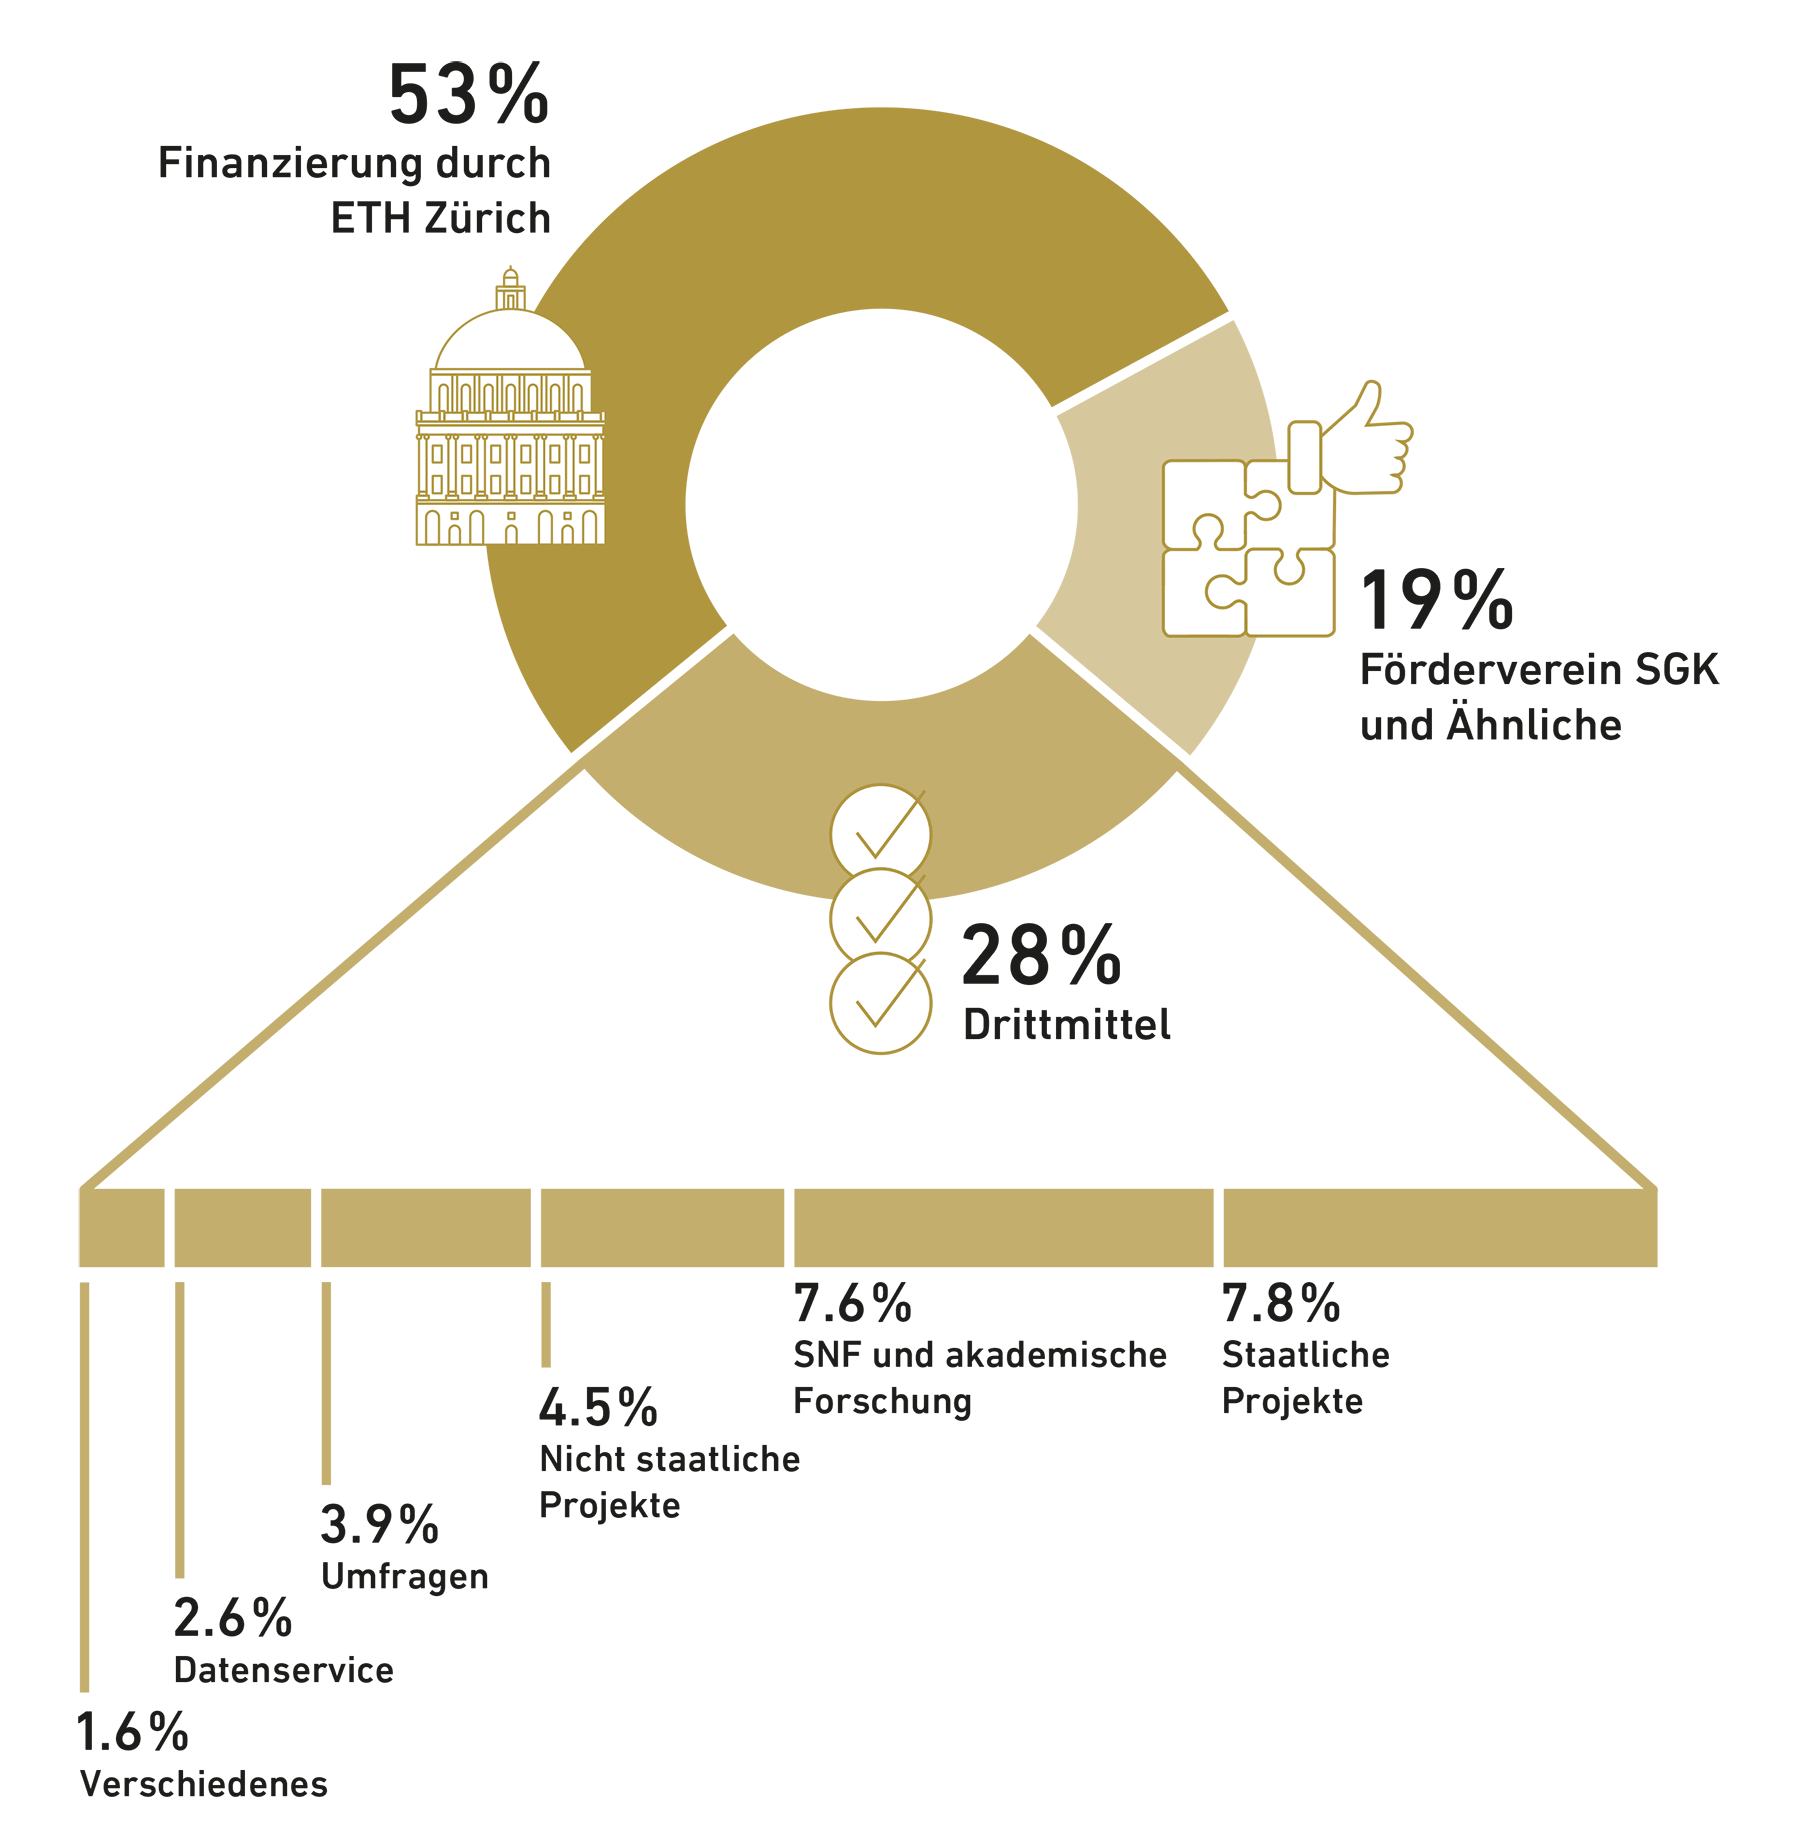 Vergrösserte Ansicht: Die KOF erhält 53% ihrer Mittel durch die ETH Zürich, 19% durch den Förderverein SGK sowie 28% durch Drittmittel. Diese Drittmittel setzen sich zusammen aus 7.8% staatliche Projekte, 7.6% SNF-Projekte und andere akademische Forschung, 4.5% nicht staatliche Projekte, 3.9% Umfragen, 2.6% Datenservice und 1.6% aus verschiedenen Projekten.